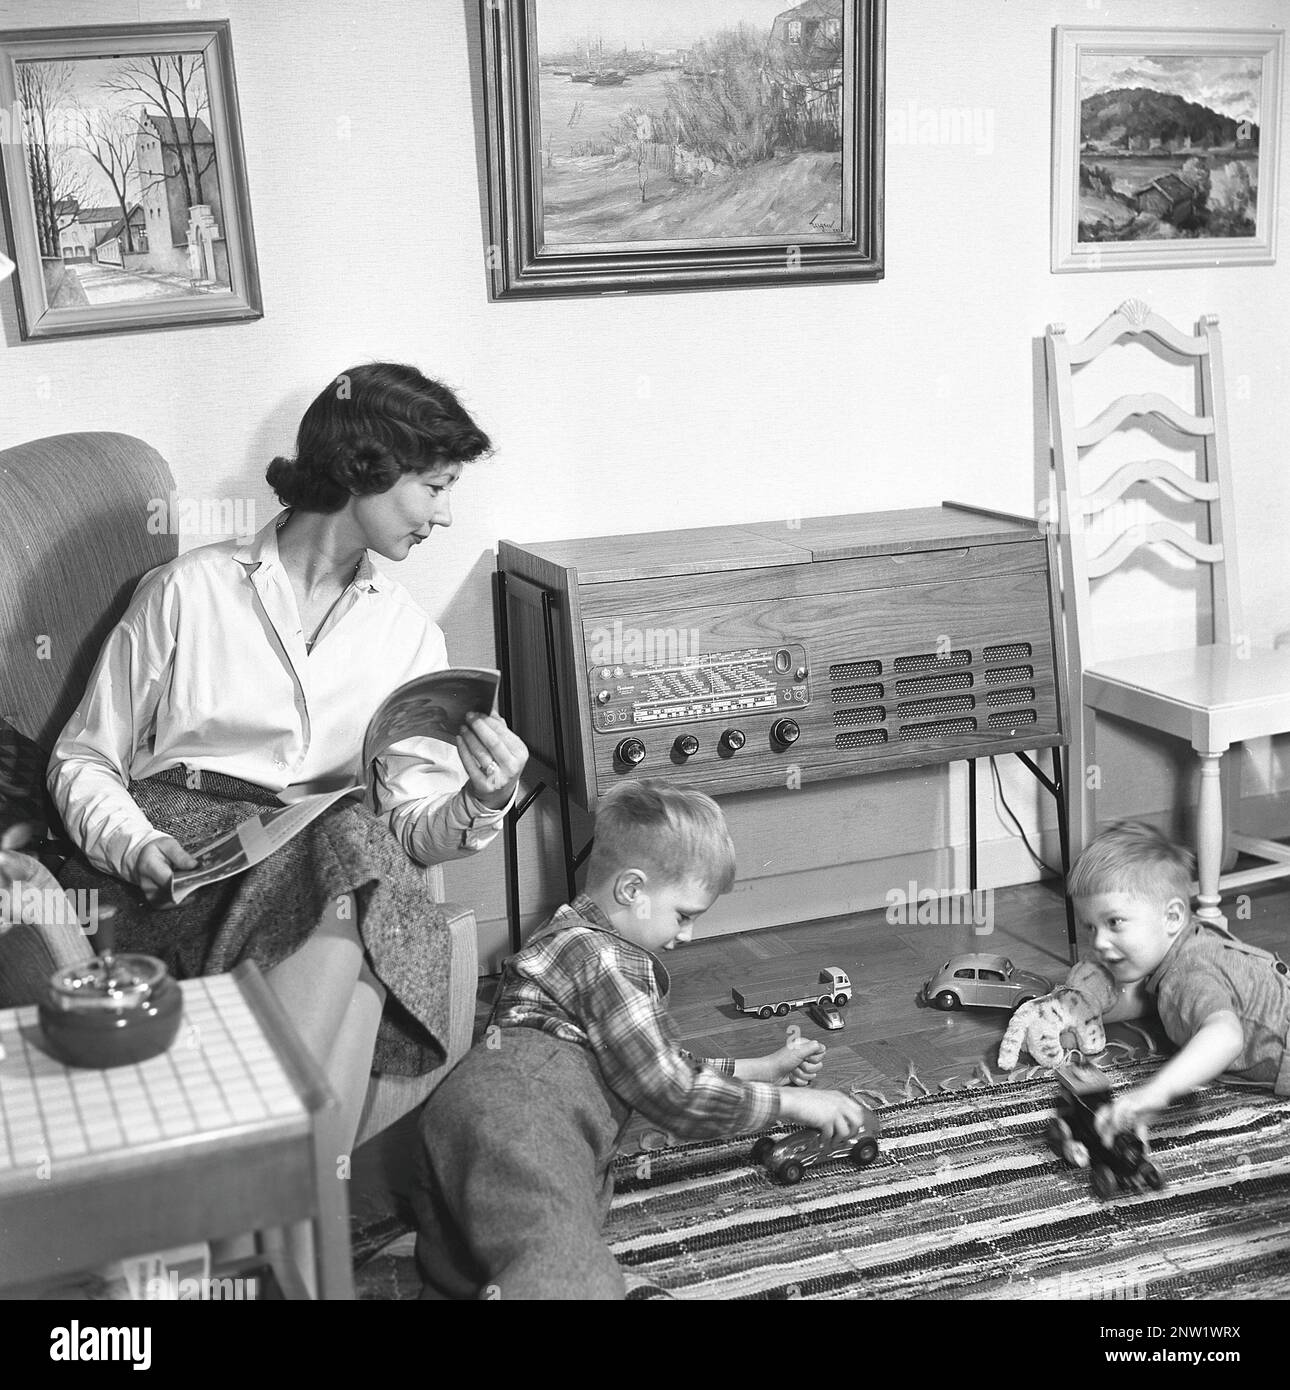 Une femme au foyer et une mère avec ses deux garçons devant la radio. Gramophone radio typique de 1957. Un gramophone radio qui a donné l'occasion d'écouter la radio et de lire des enregistrements gramophones dans la même unité. Suède 1957. Réf. BV19-8 Banque D'Images